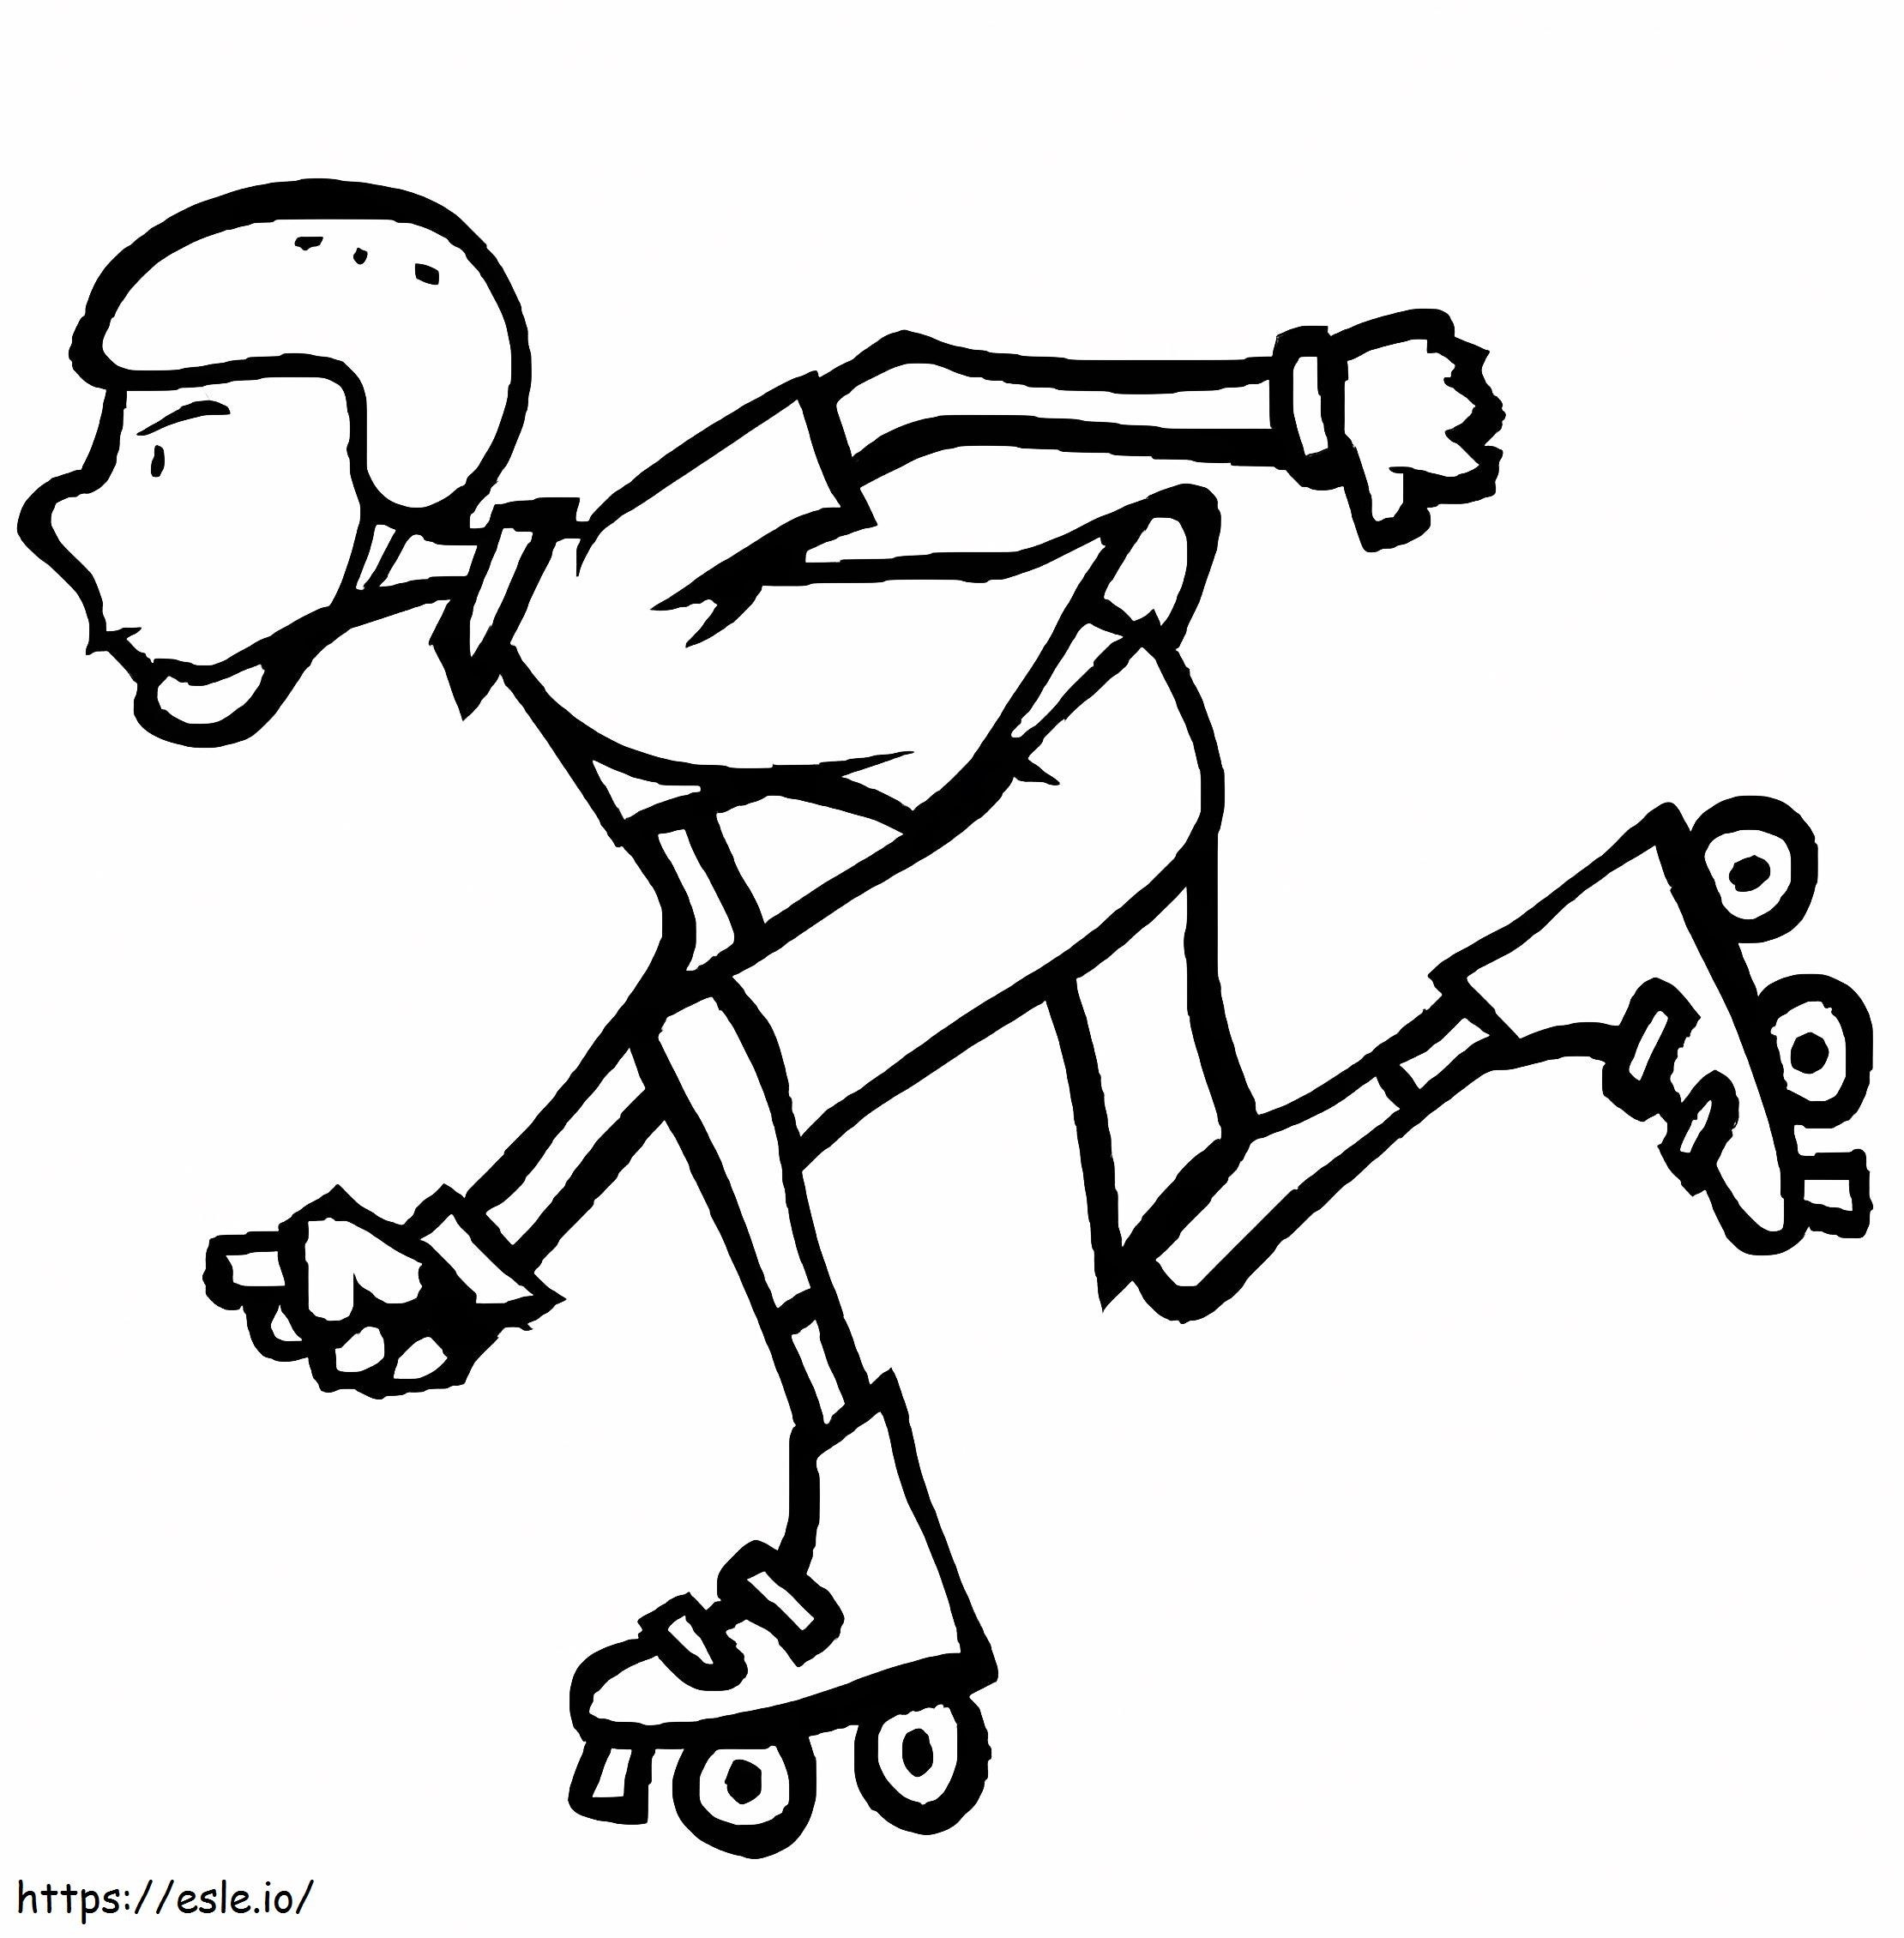 Un băiat pe patine cu rotile de colorat